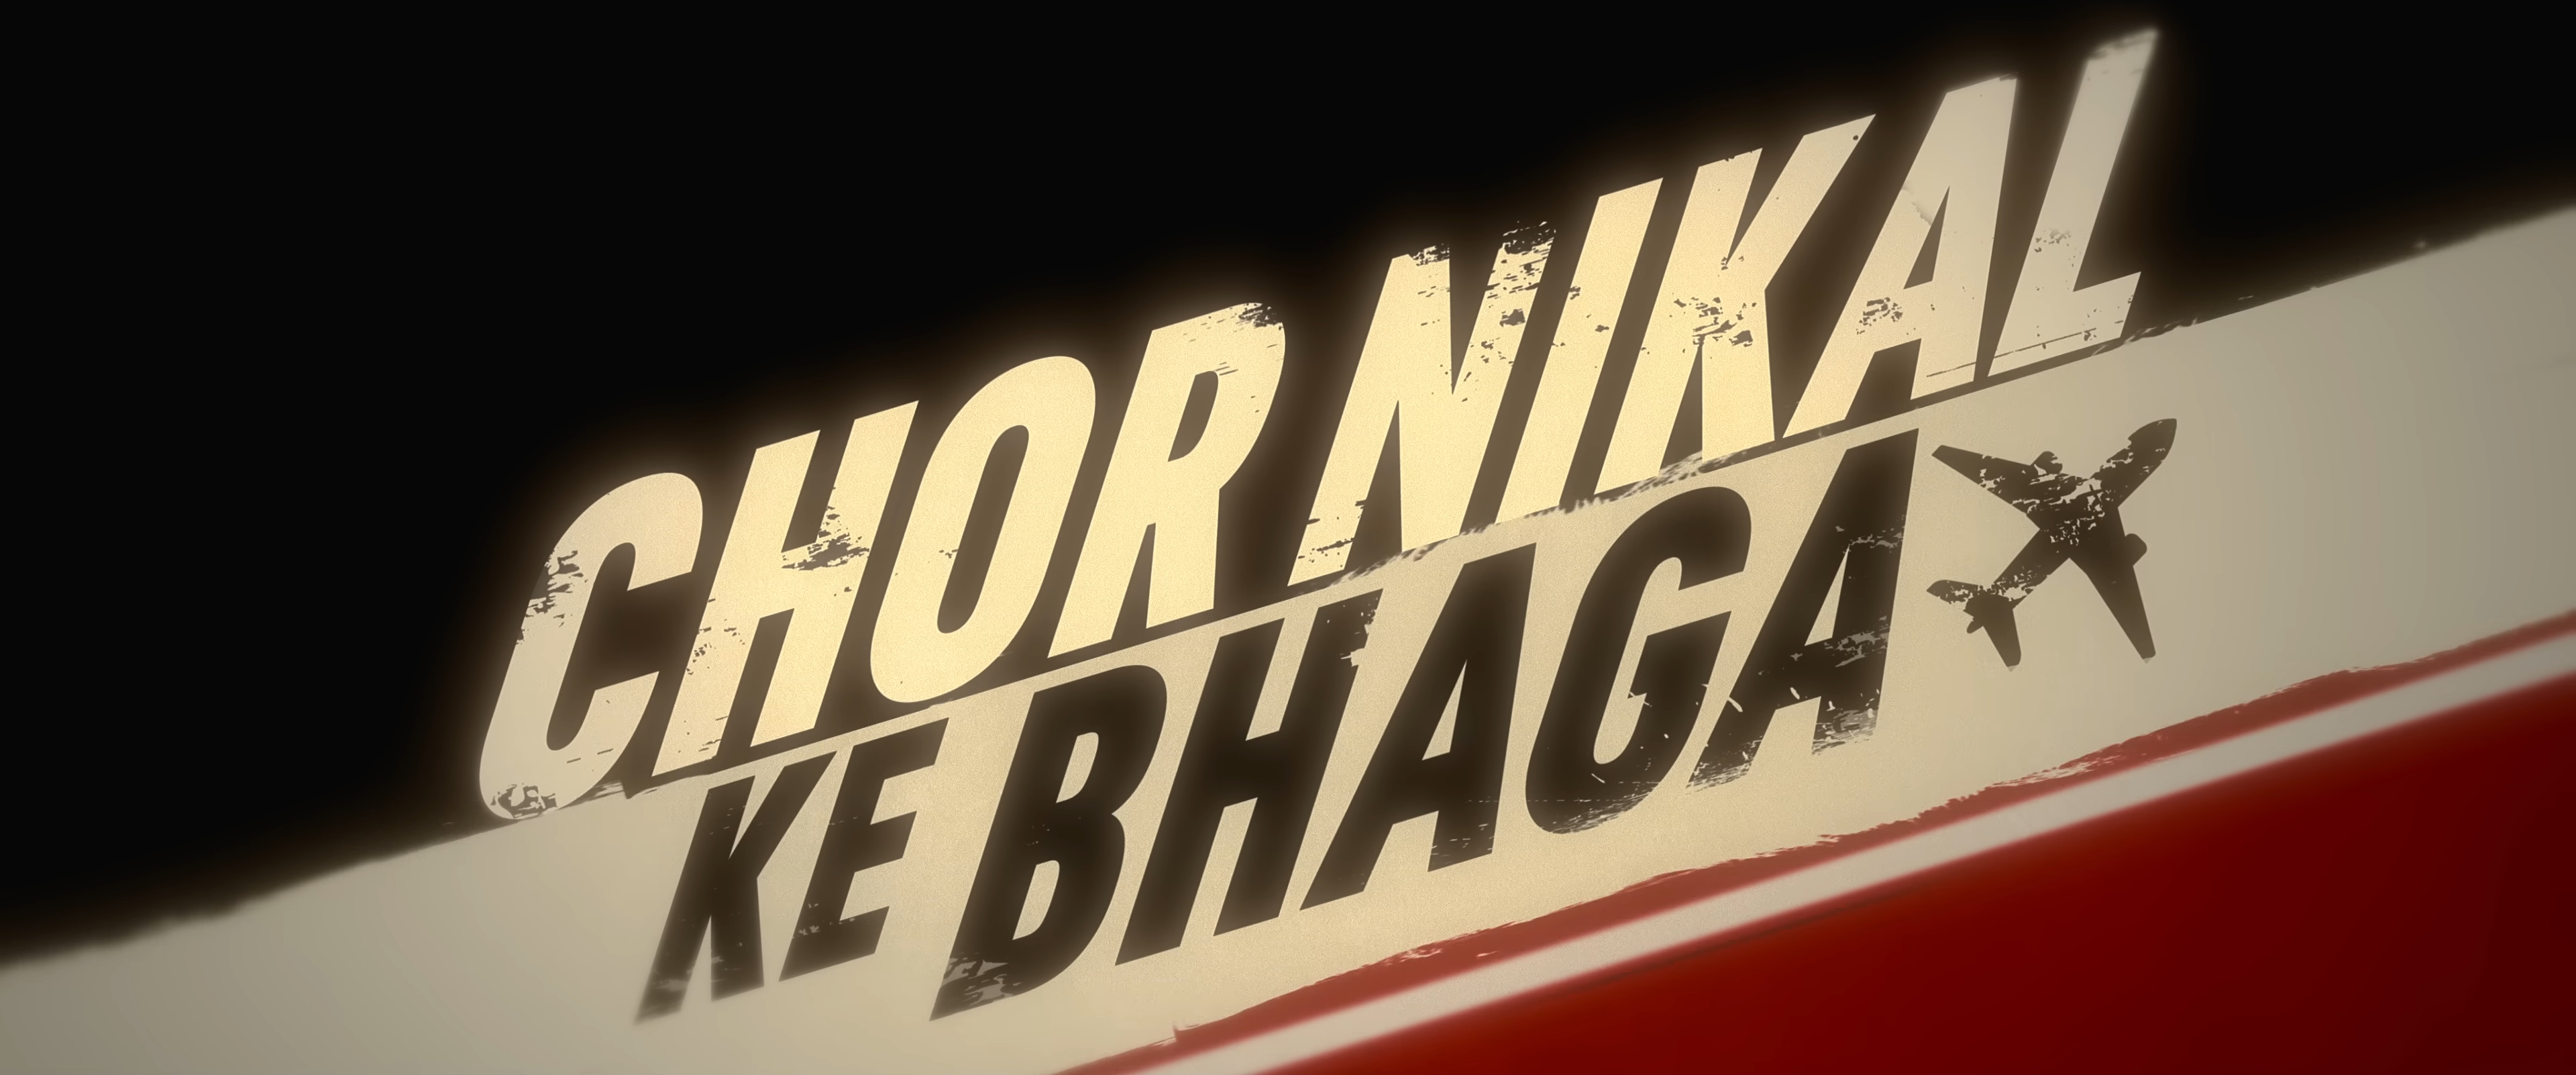 Chor Nikal Ke Bhaaga